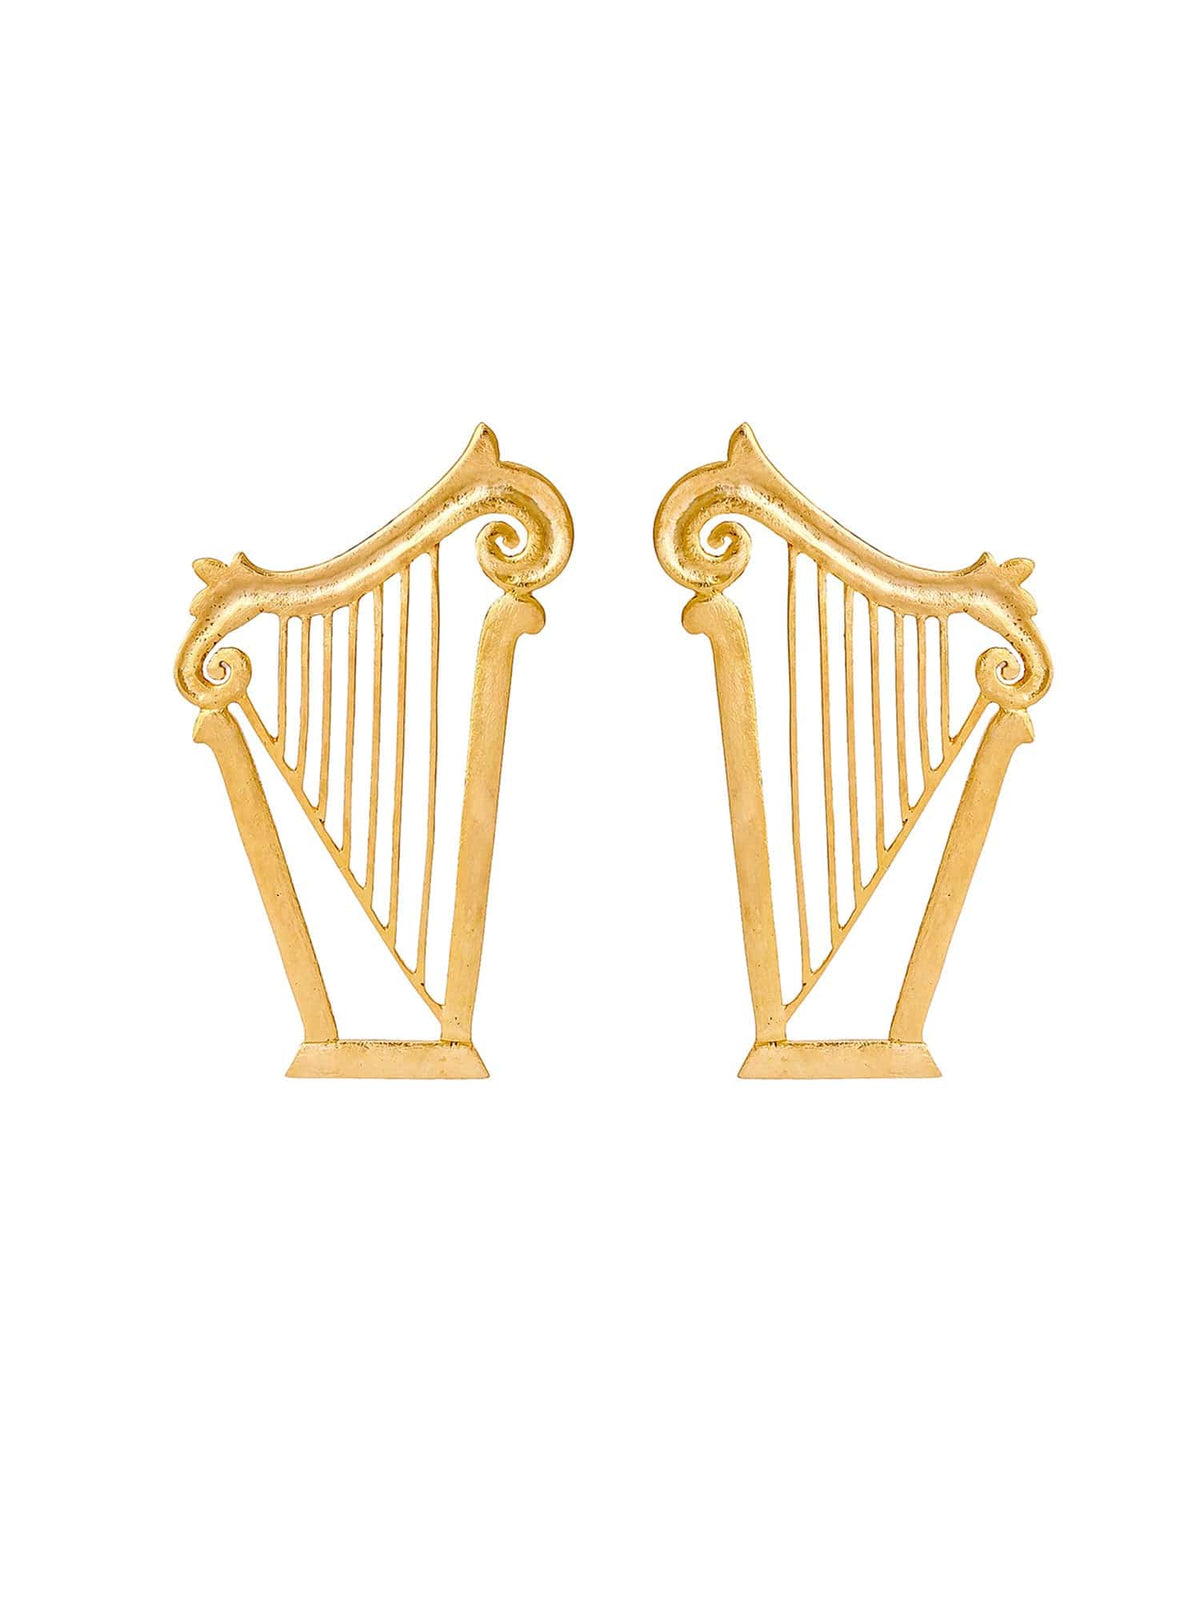 Harp earrings